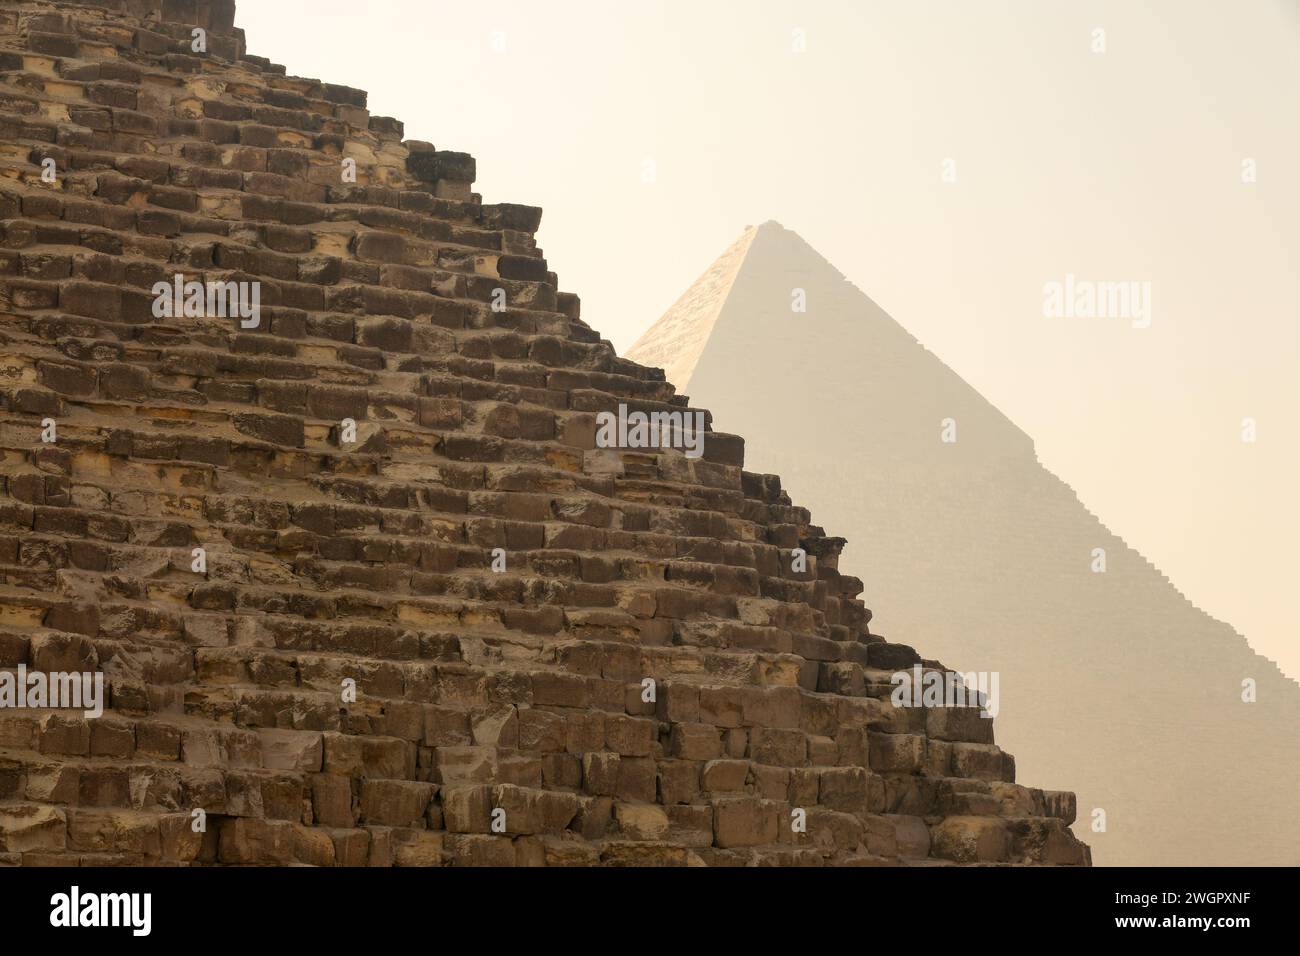 Gros plan des anciennes pyramides égyptiennes de Gizeh près du Caire, en Égypte Banque D'Images